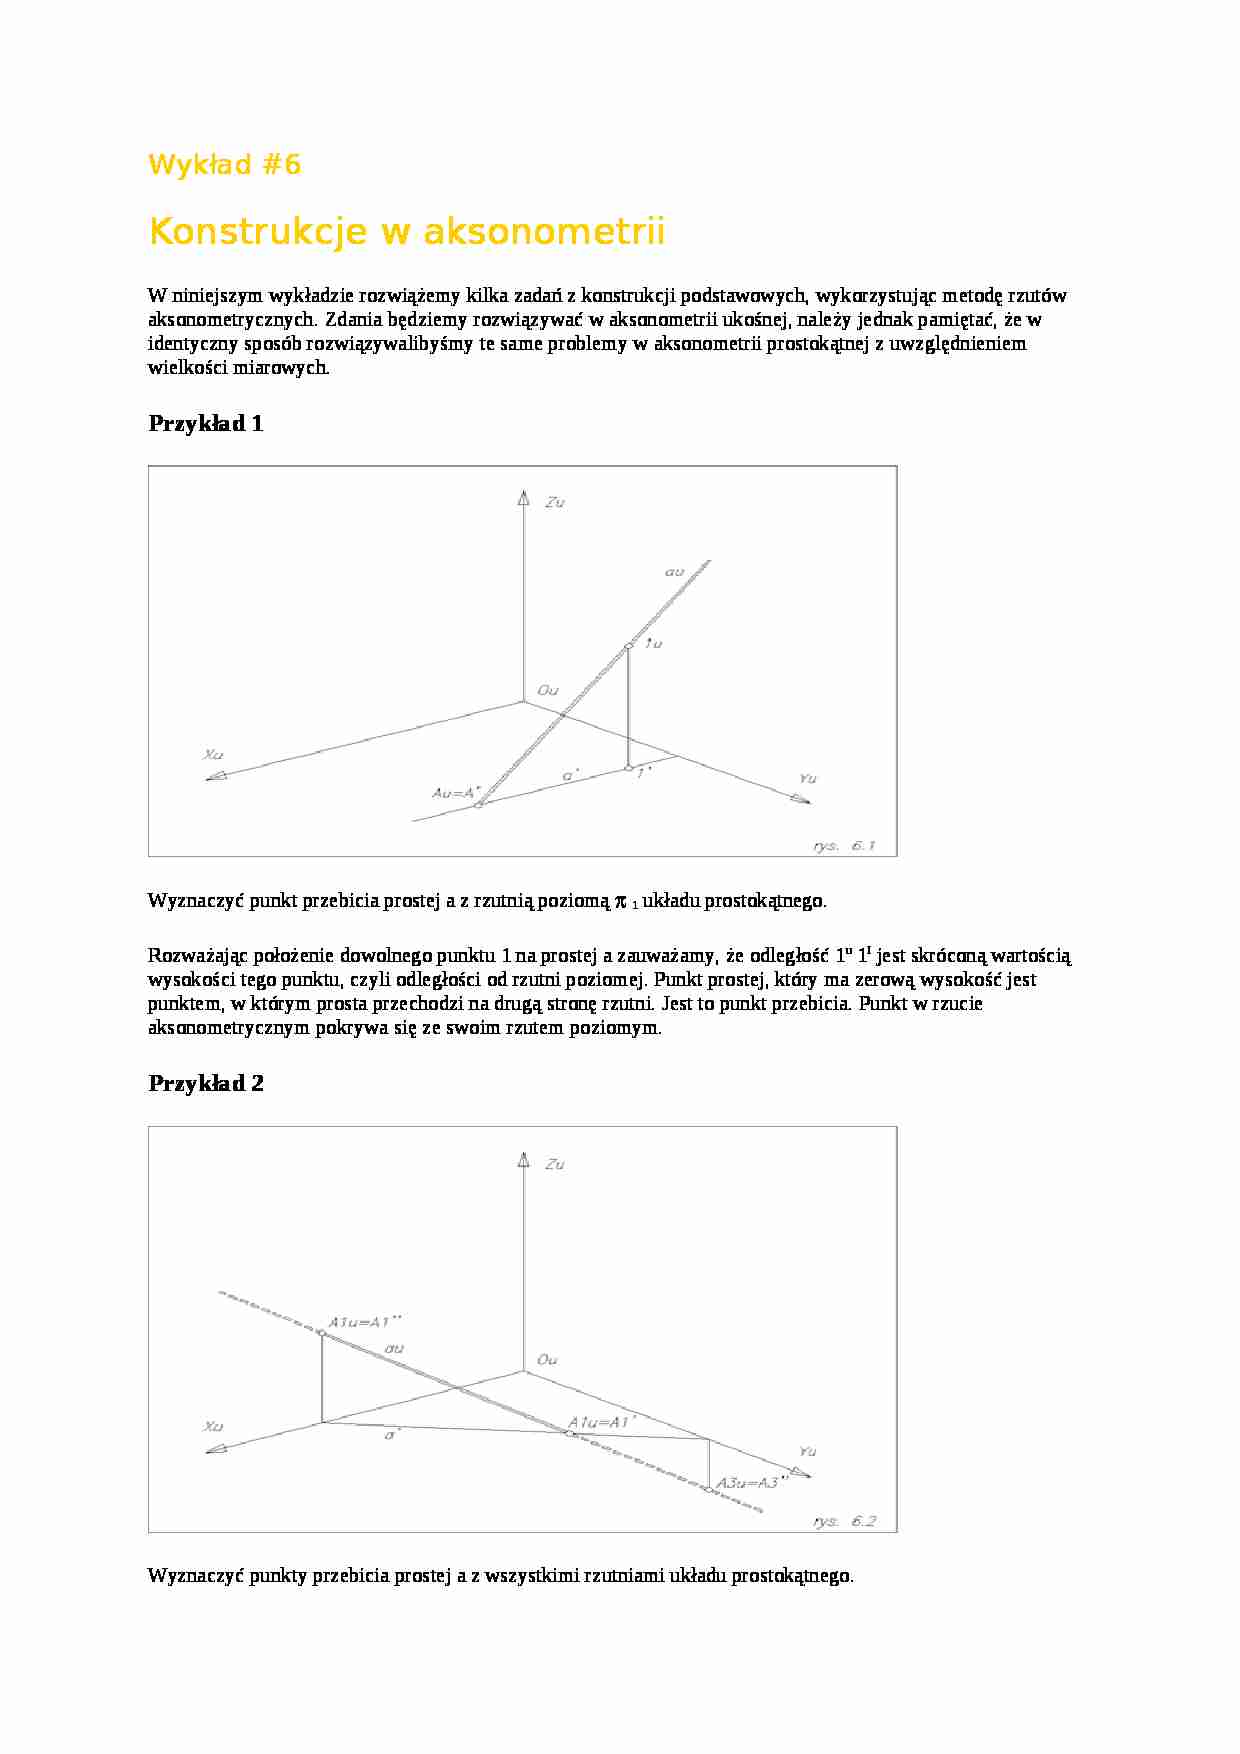 Konstrukcje w aksonometrii-wykład - strona 1